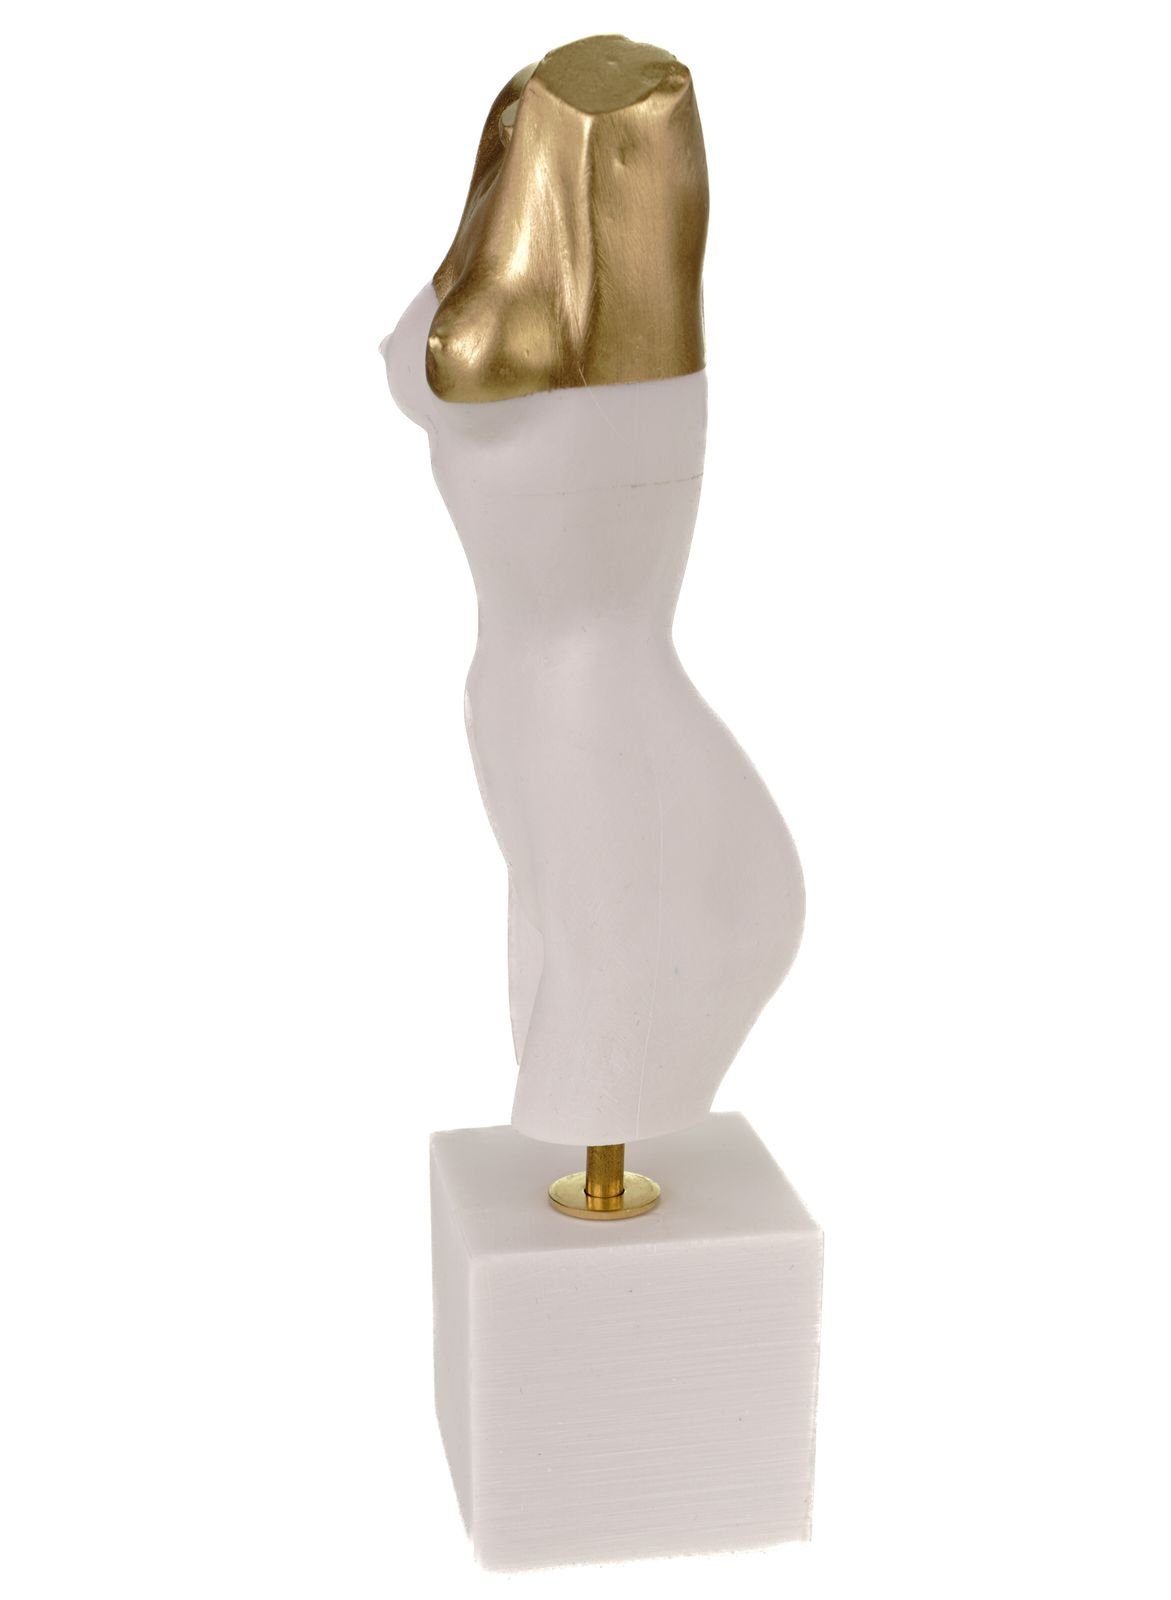 Kremers Schatzkiste Dekofigur Hingabe Liebe 24 cm Figurine Skulptur Alabaster Kunst Frauentorso weiß/gold Art Akt